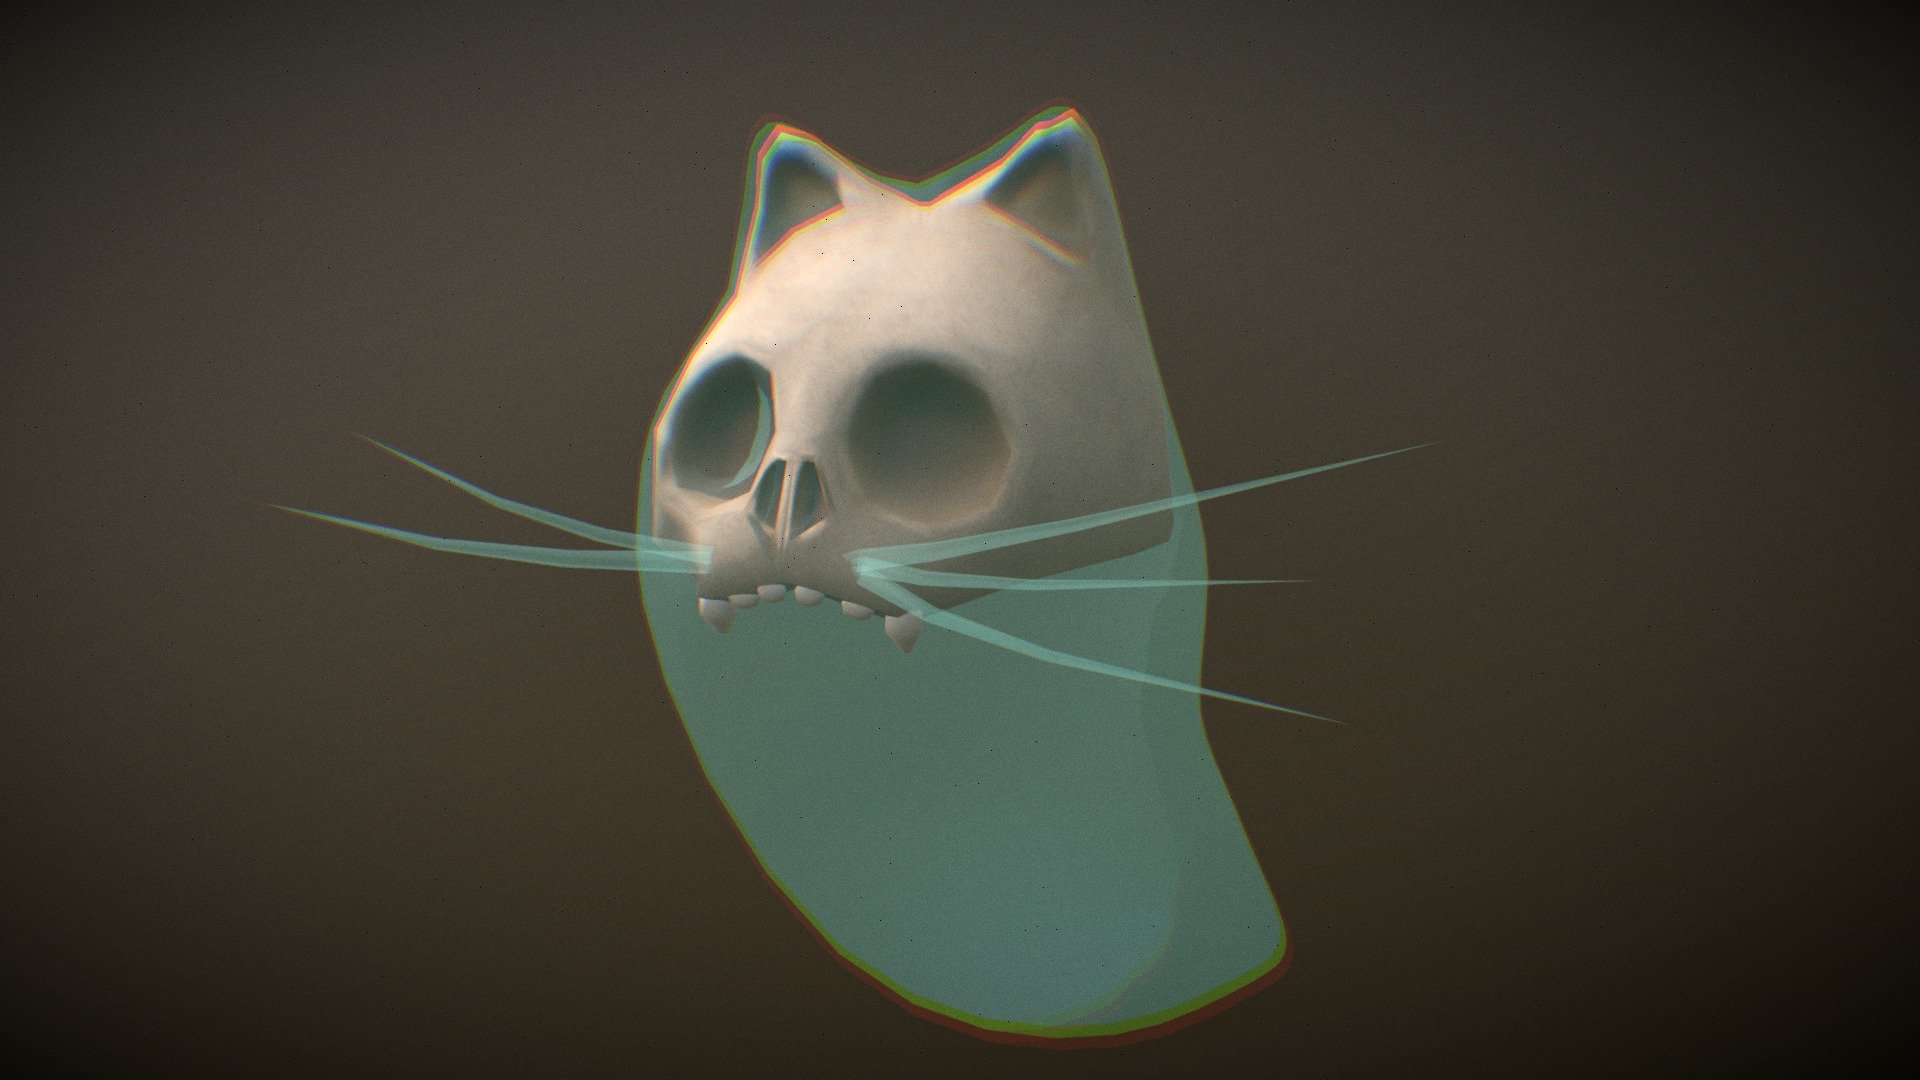 Cartoon cute ghost cat model for #SketchfabWeeklyChallenge topic &ldquo;SKeleton